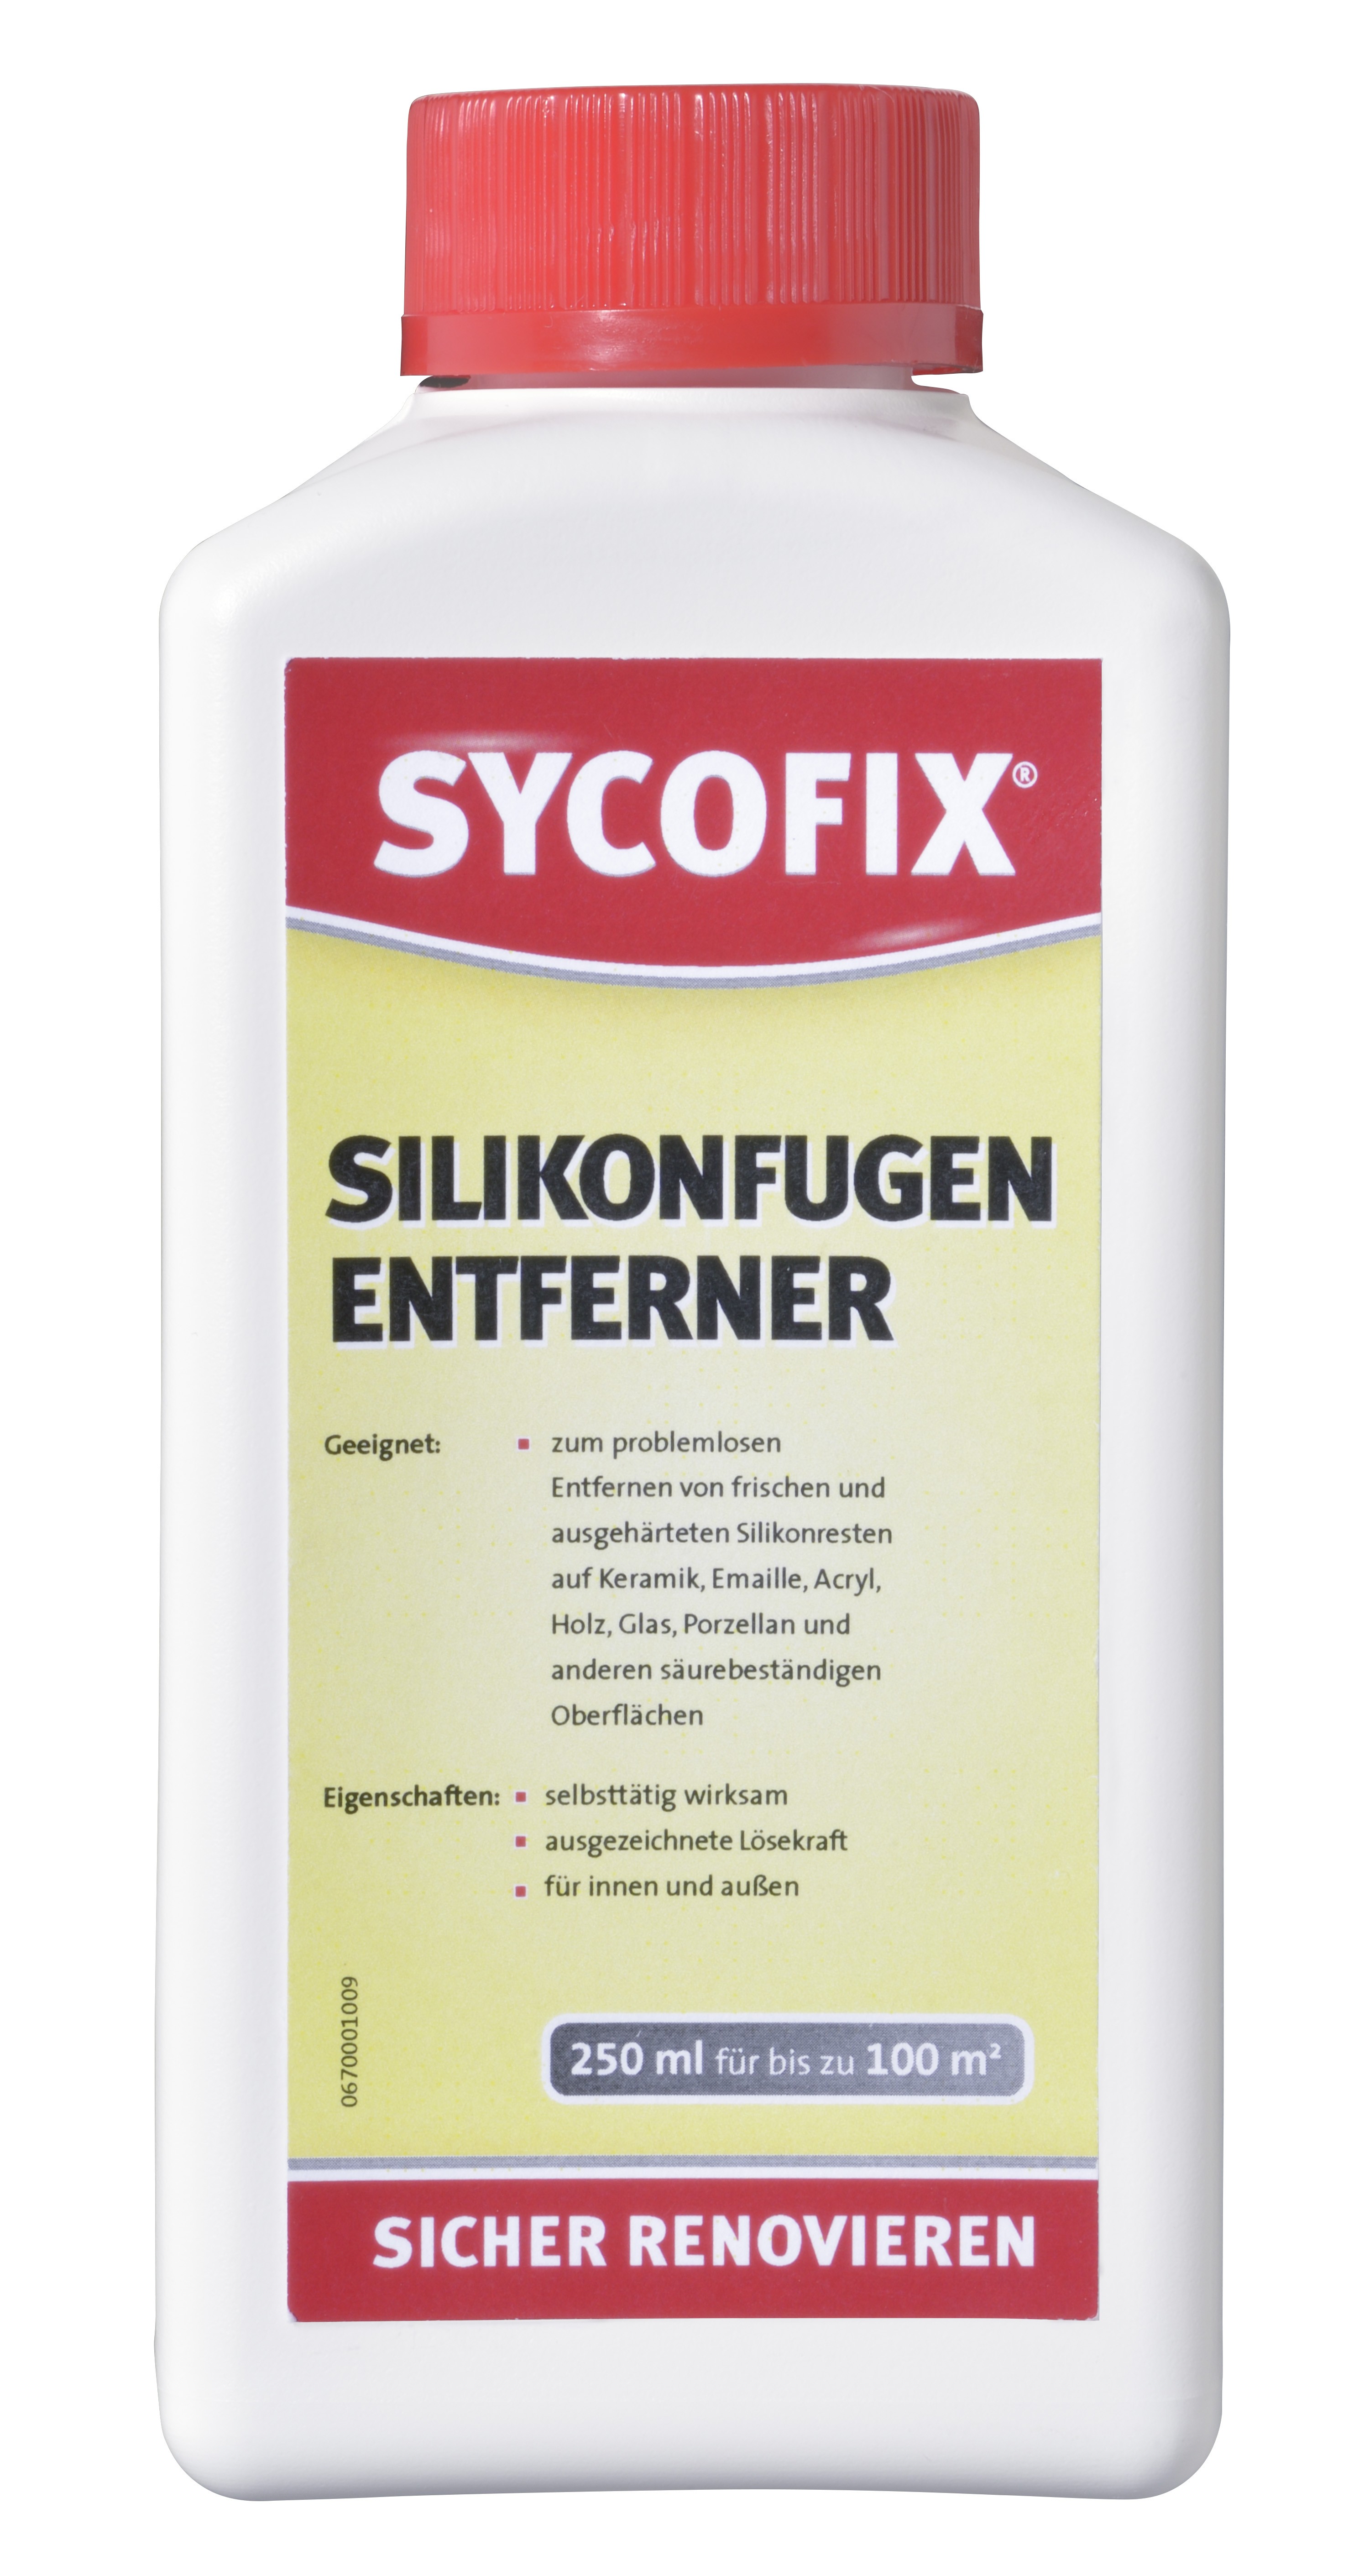 Sycofix - Silikonfugen-Entferner 250 ml